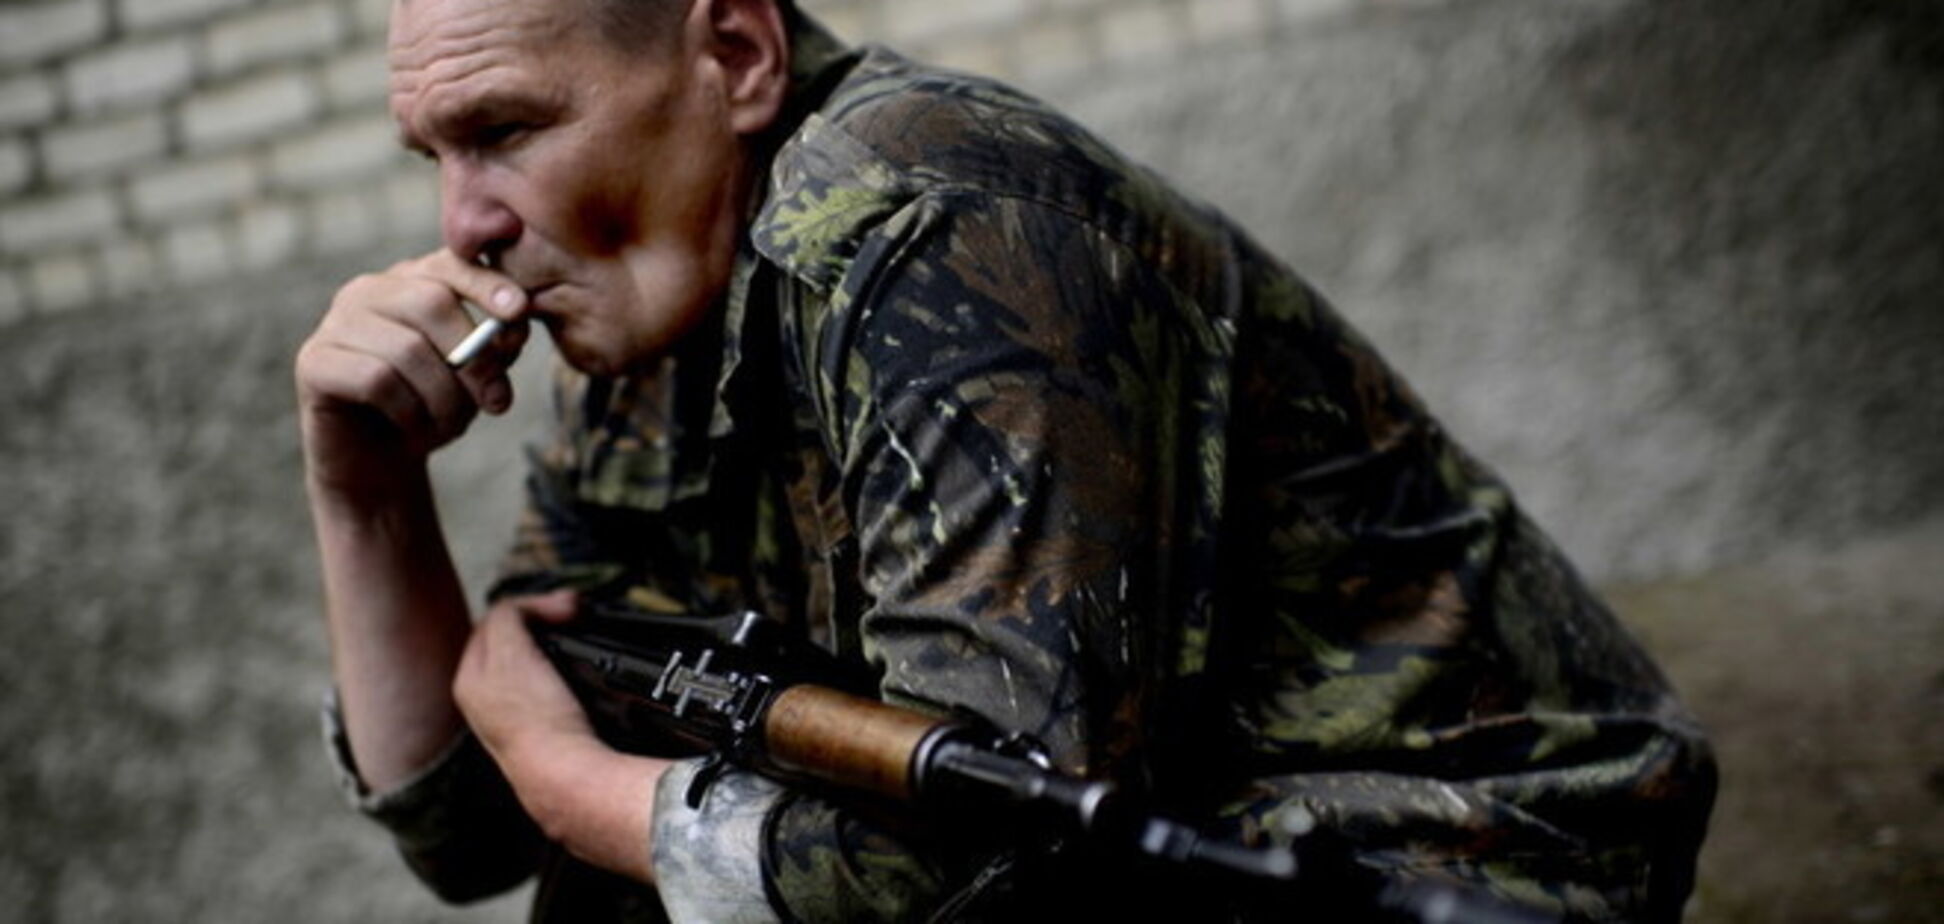 В Донецке террористы напали на тюремщиков с целью заполучить оружие